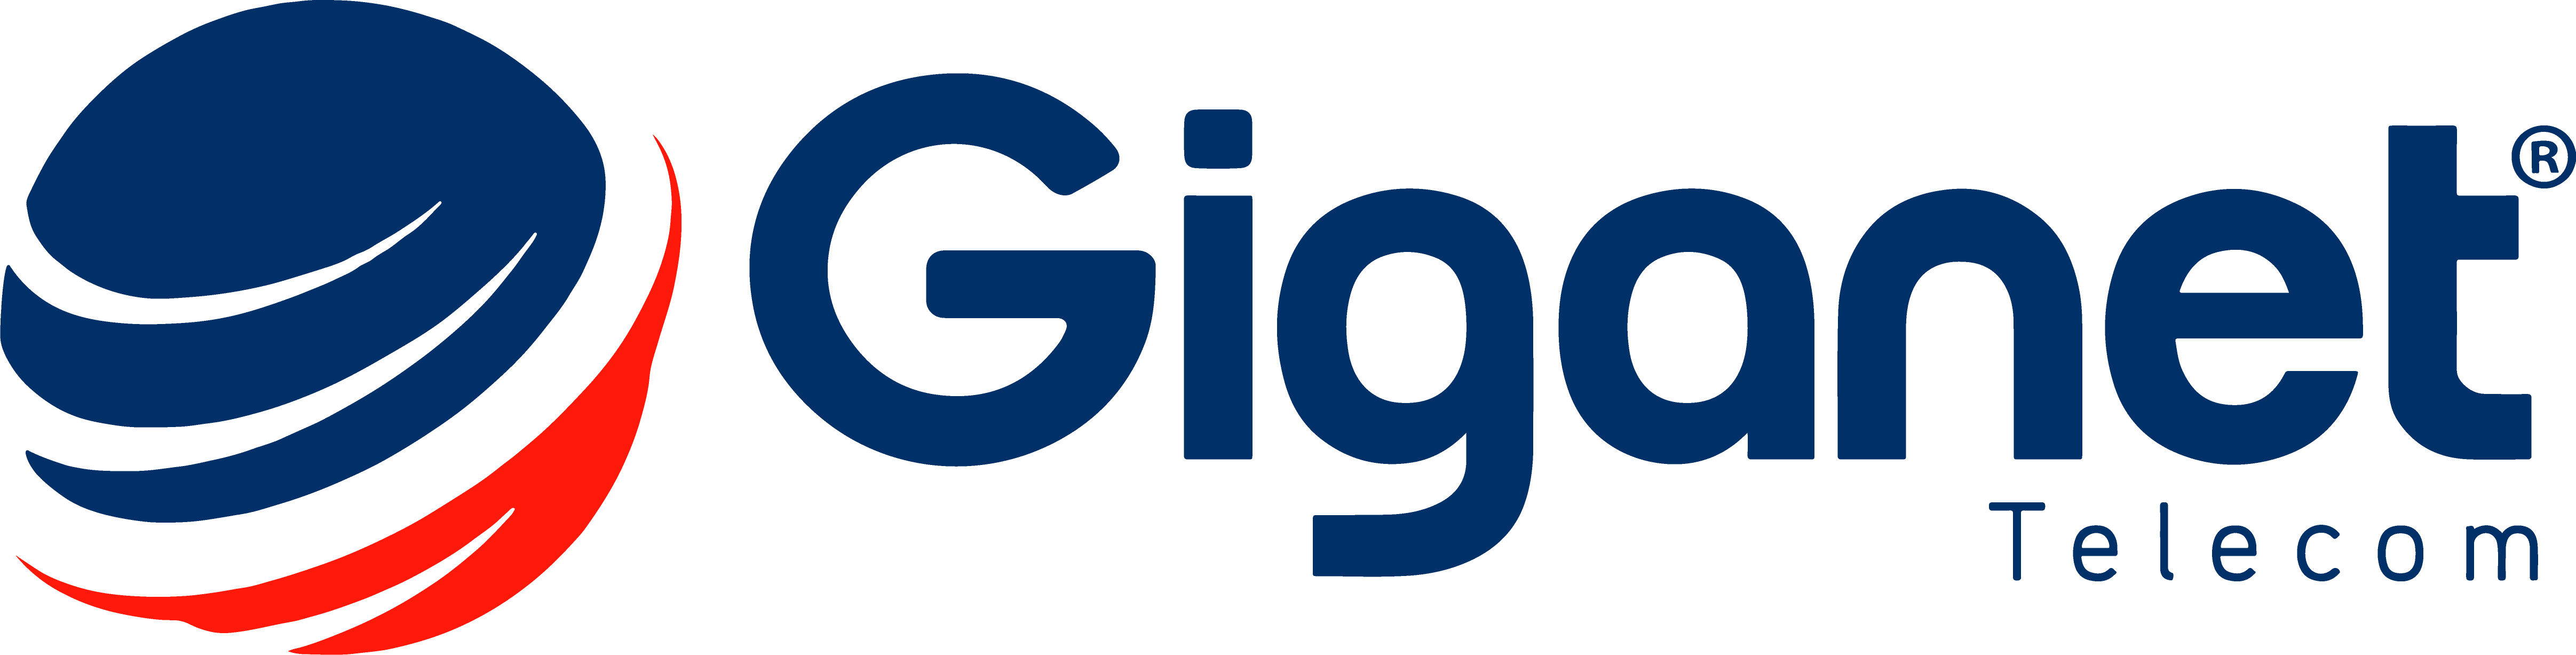 Logo giganet telecom